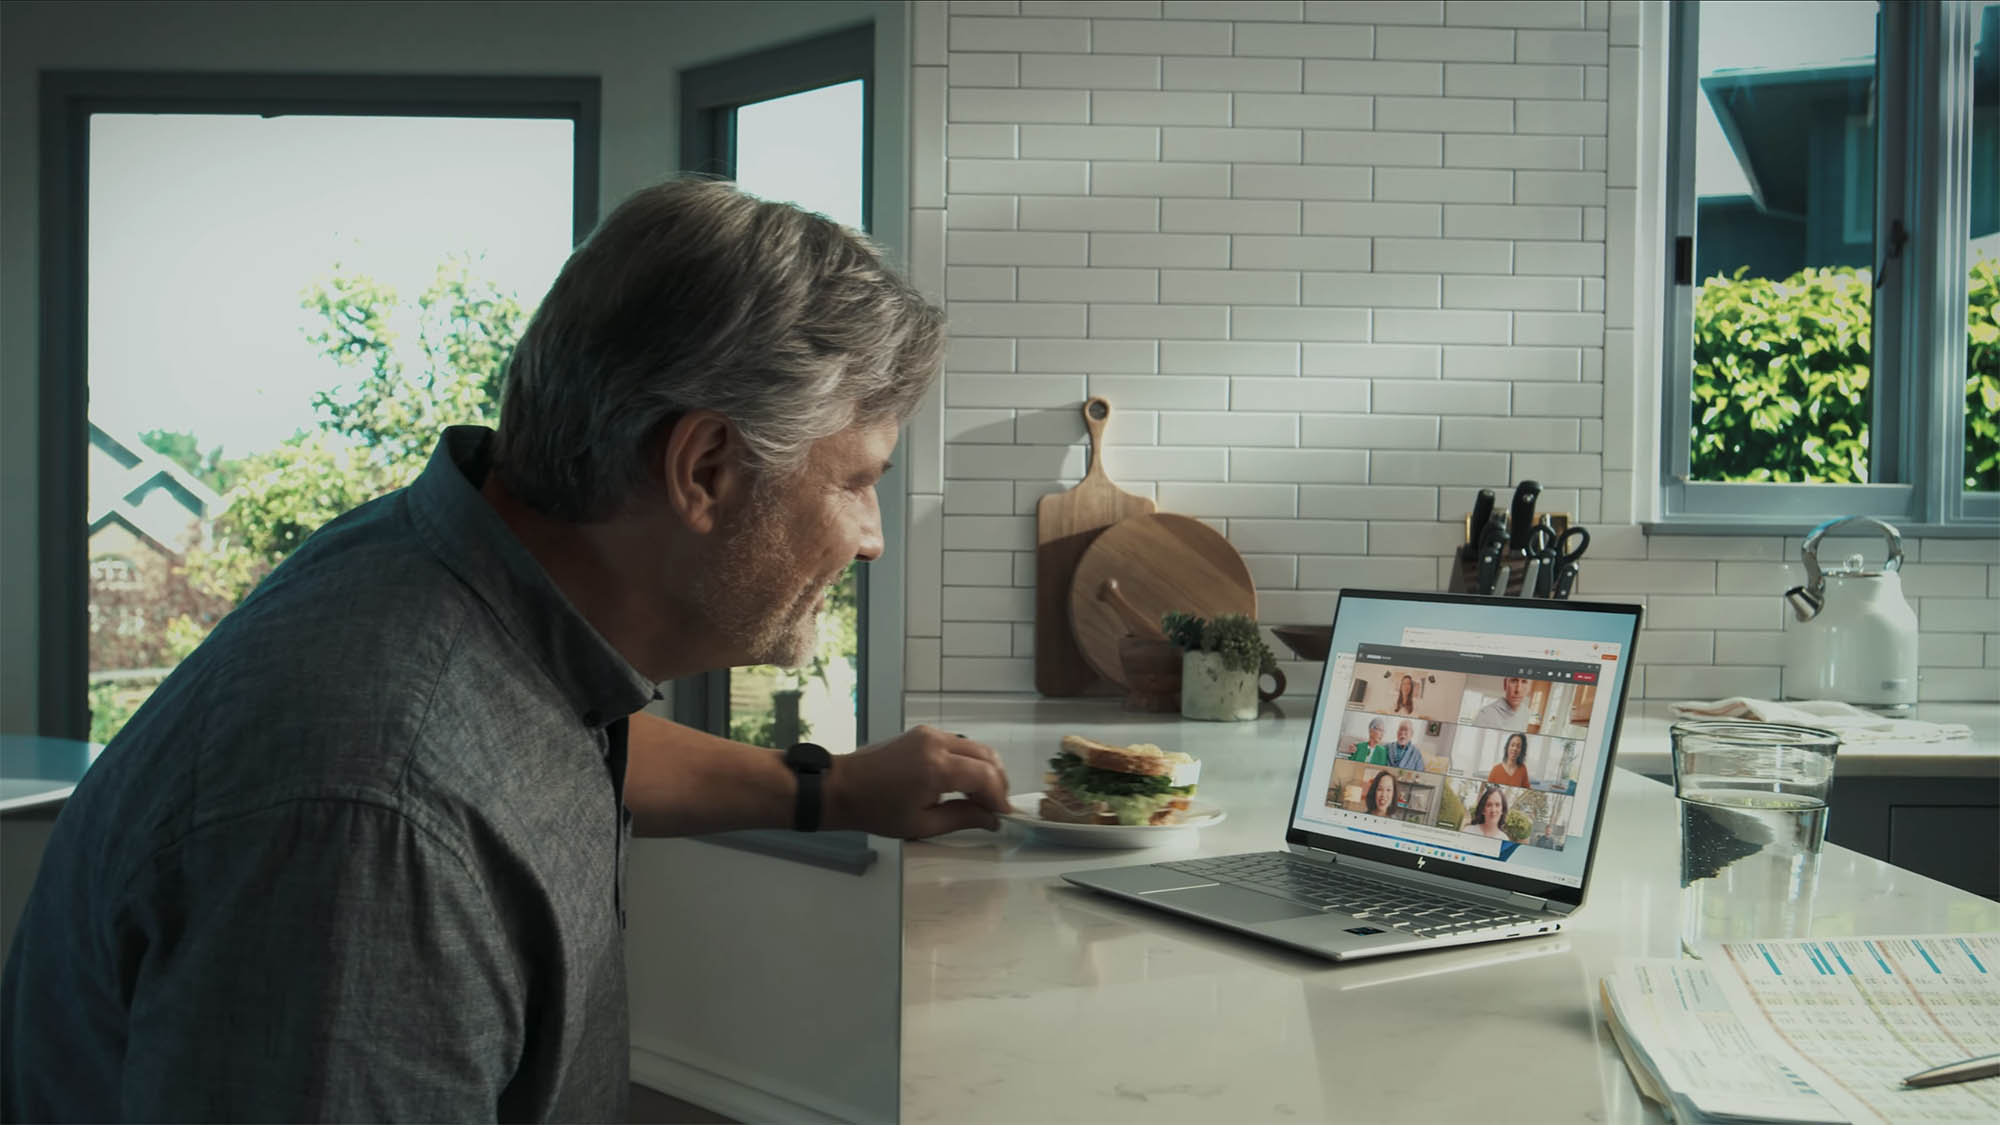 वीडियो चैट करने के लिए आदमी लैपटॉप पर Microsoft Teams का उपयोग करता है।